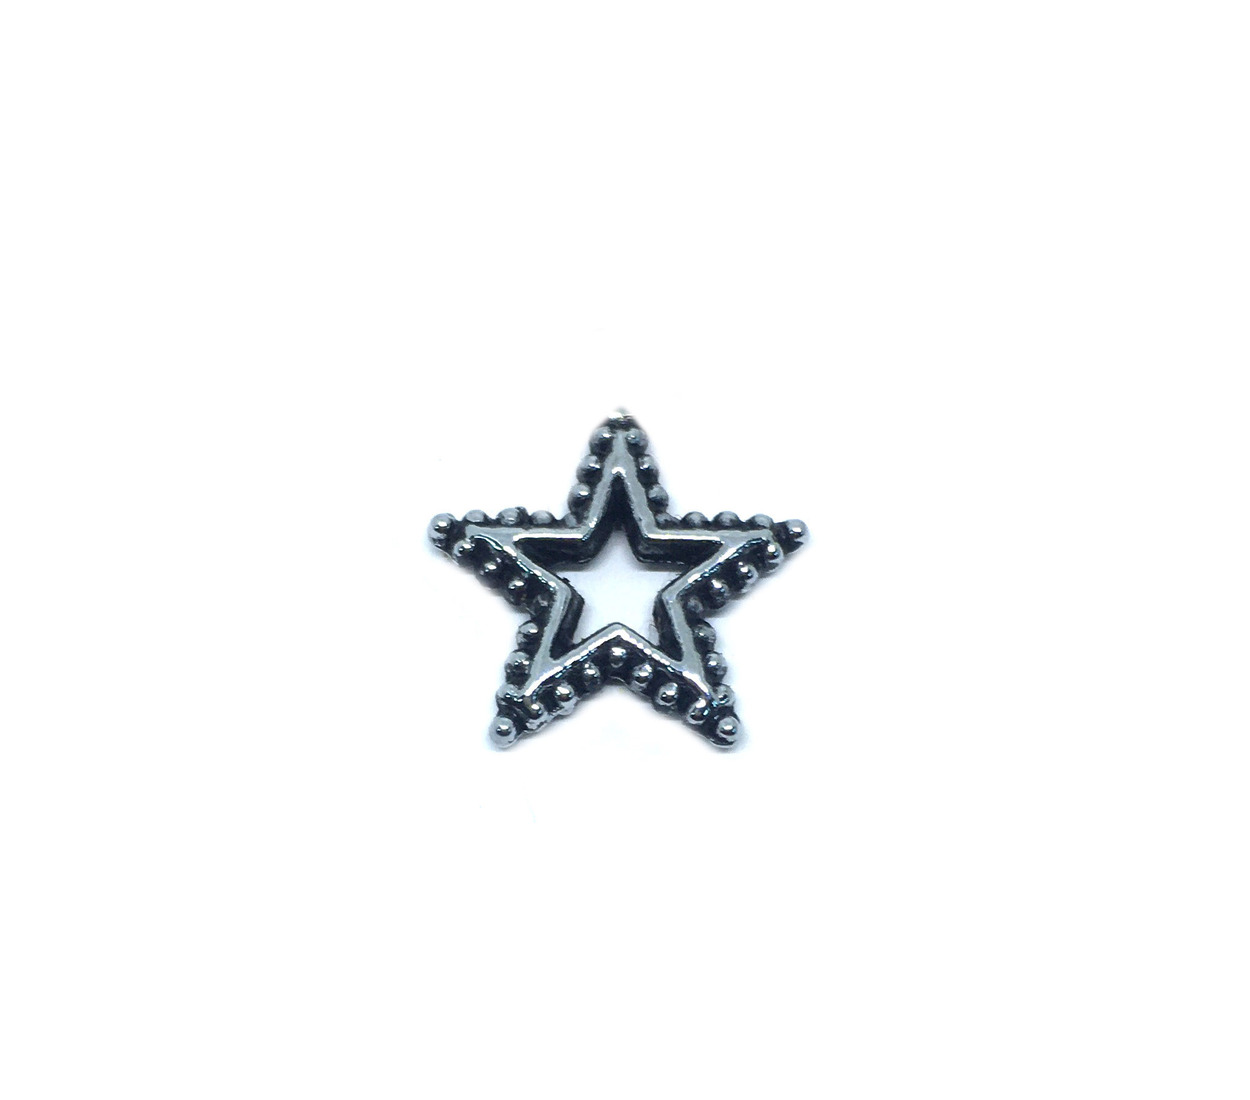 Silver Vintage Star Brooch Pin